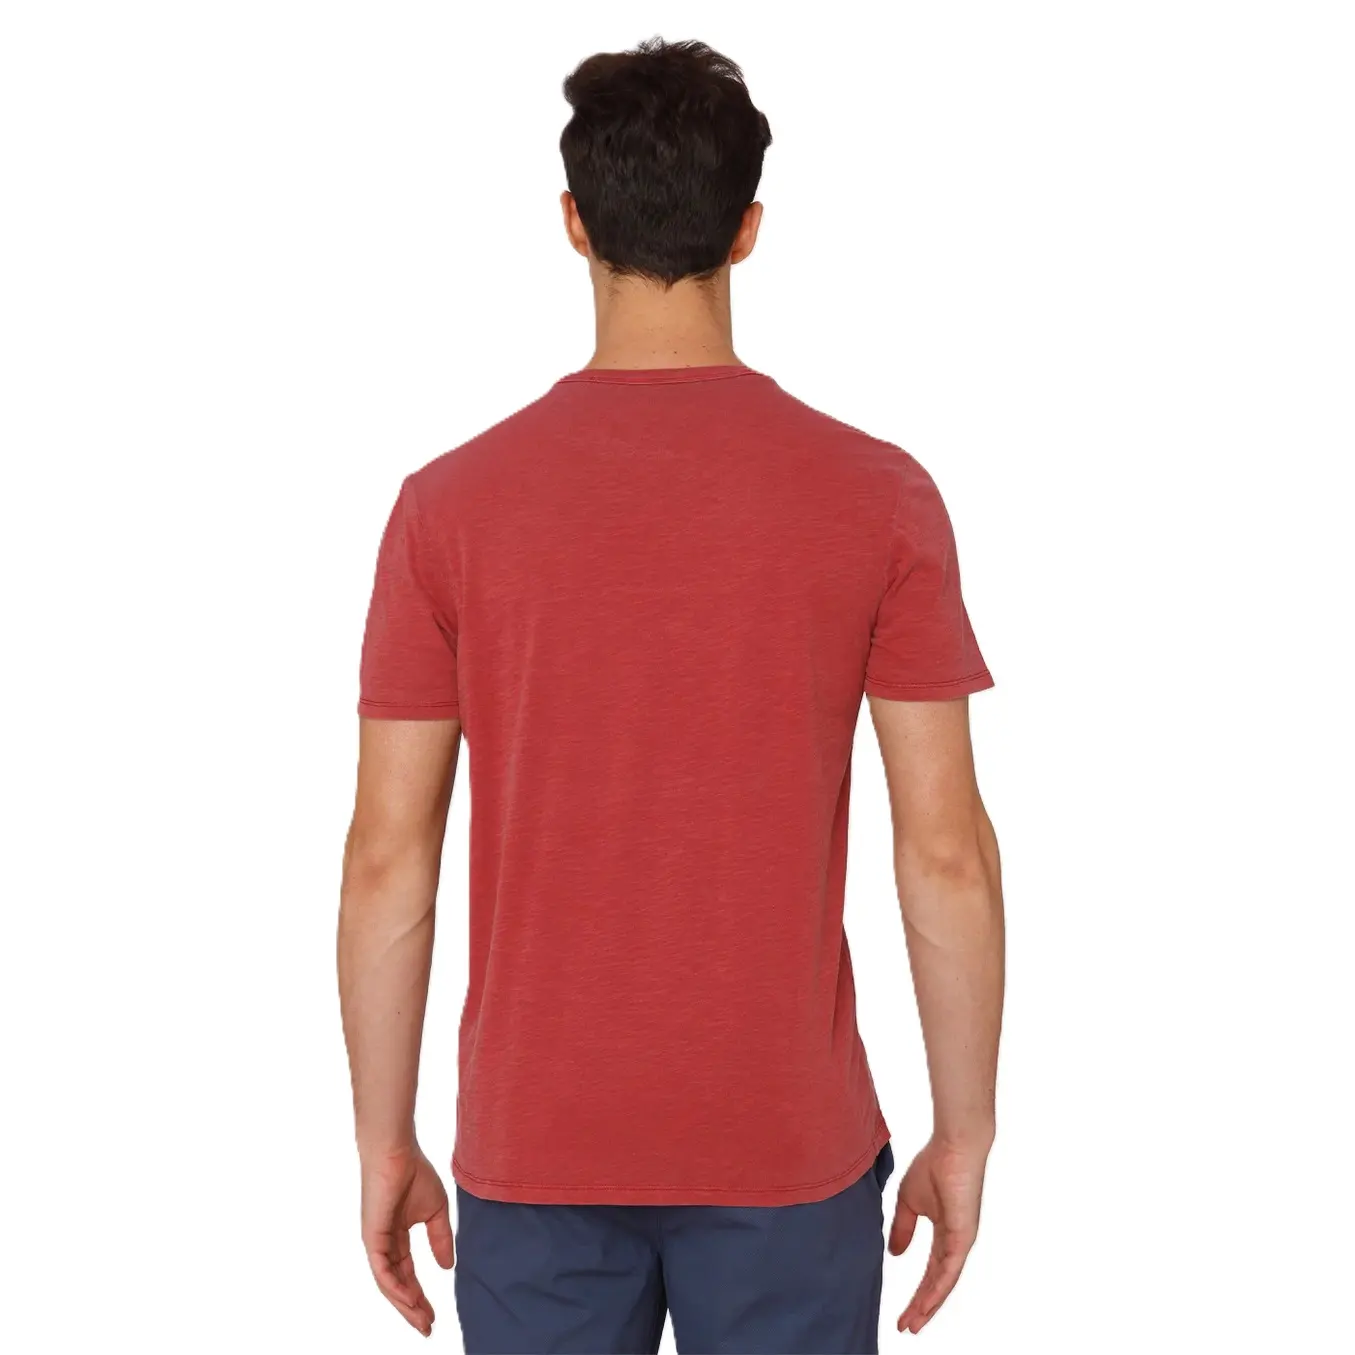 पुरुषों के लिए सर्वाधिक बिकने वाली कॉटन टी शर्ट प्लस साइज गारमेंट्स फैक्ट्री निर्माता कस्टम मुद्रित लोगो डिजाइन बुना हुआ कैजुअल टी शर्ट